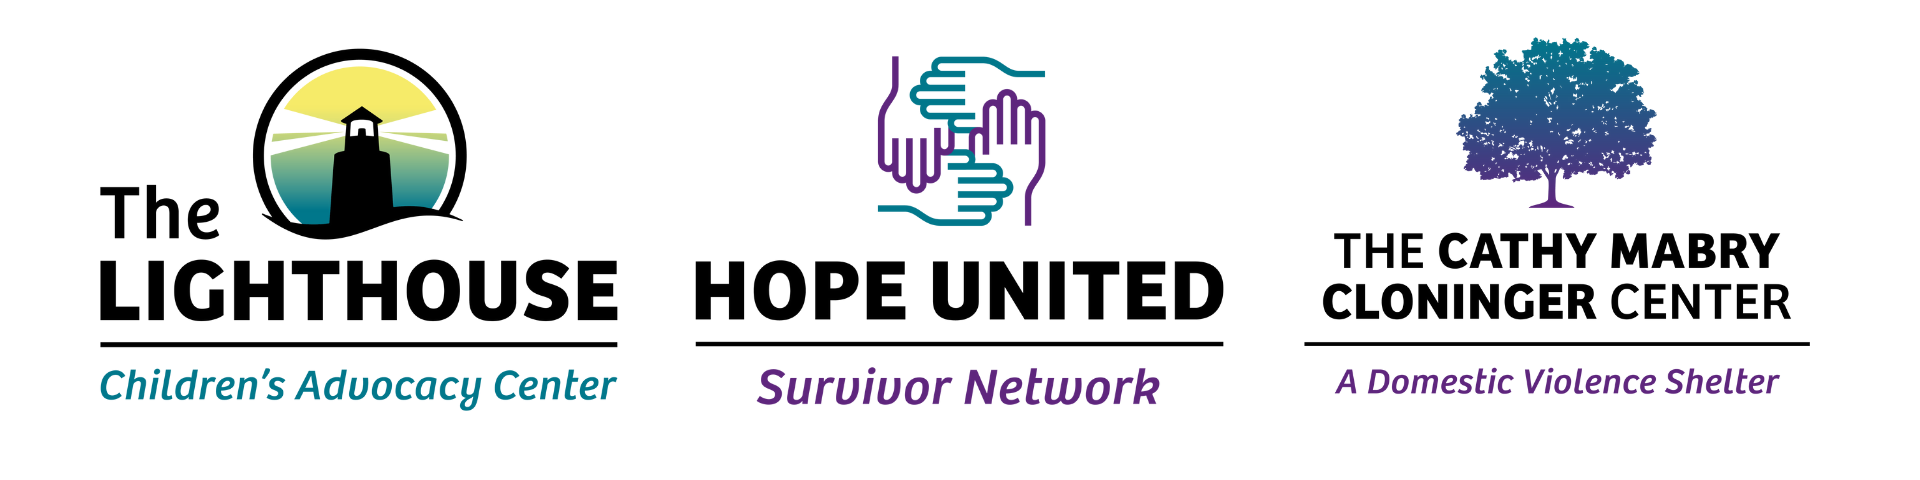 Hope United (3 Logos)